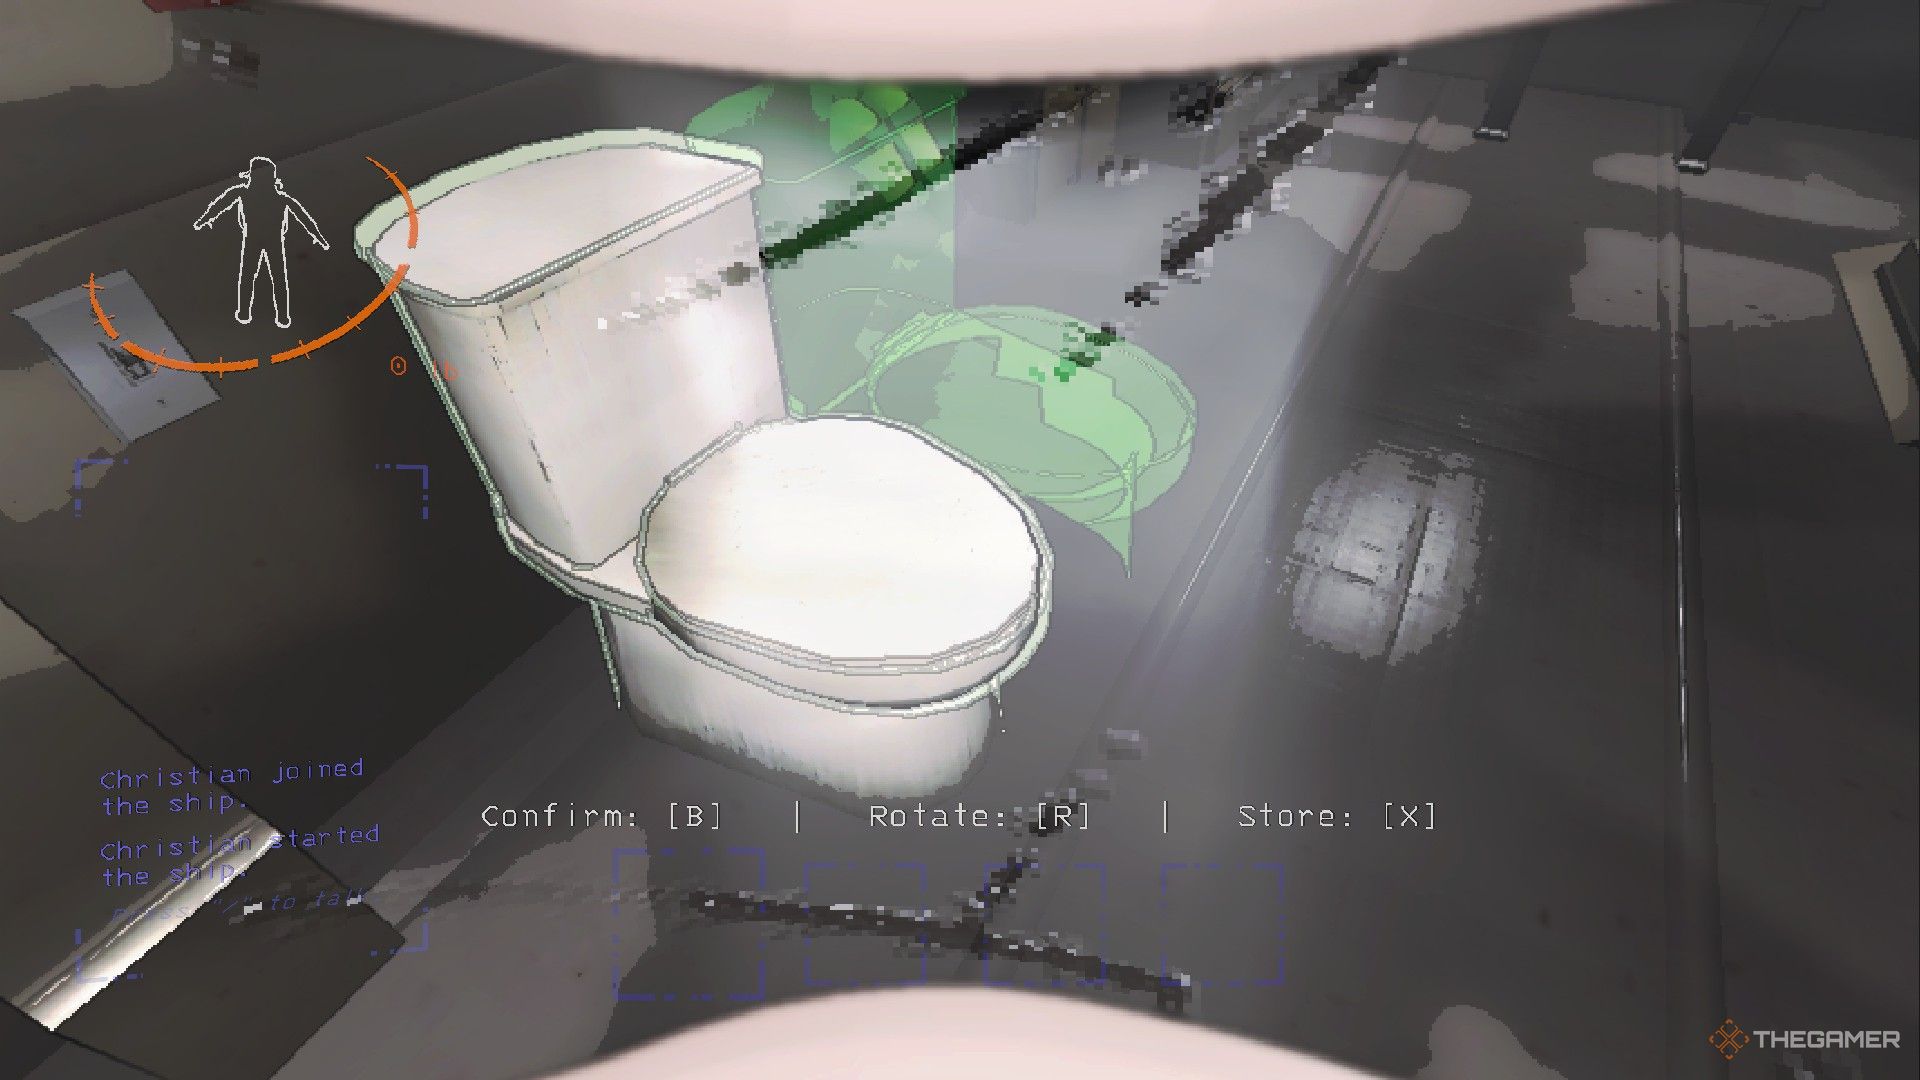 Скриншот туалета на корабле в Lethal Company, где игрок отодвигает от него зеленый контур объекта.